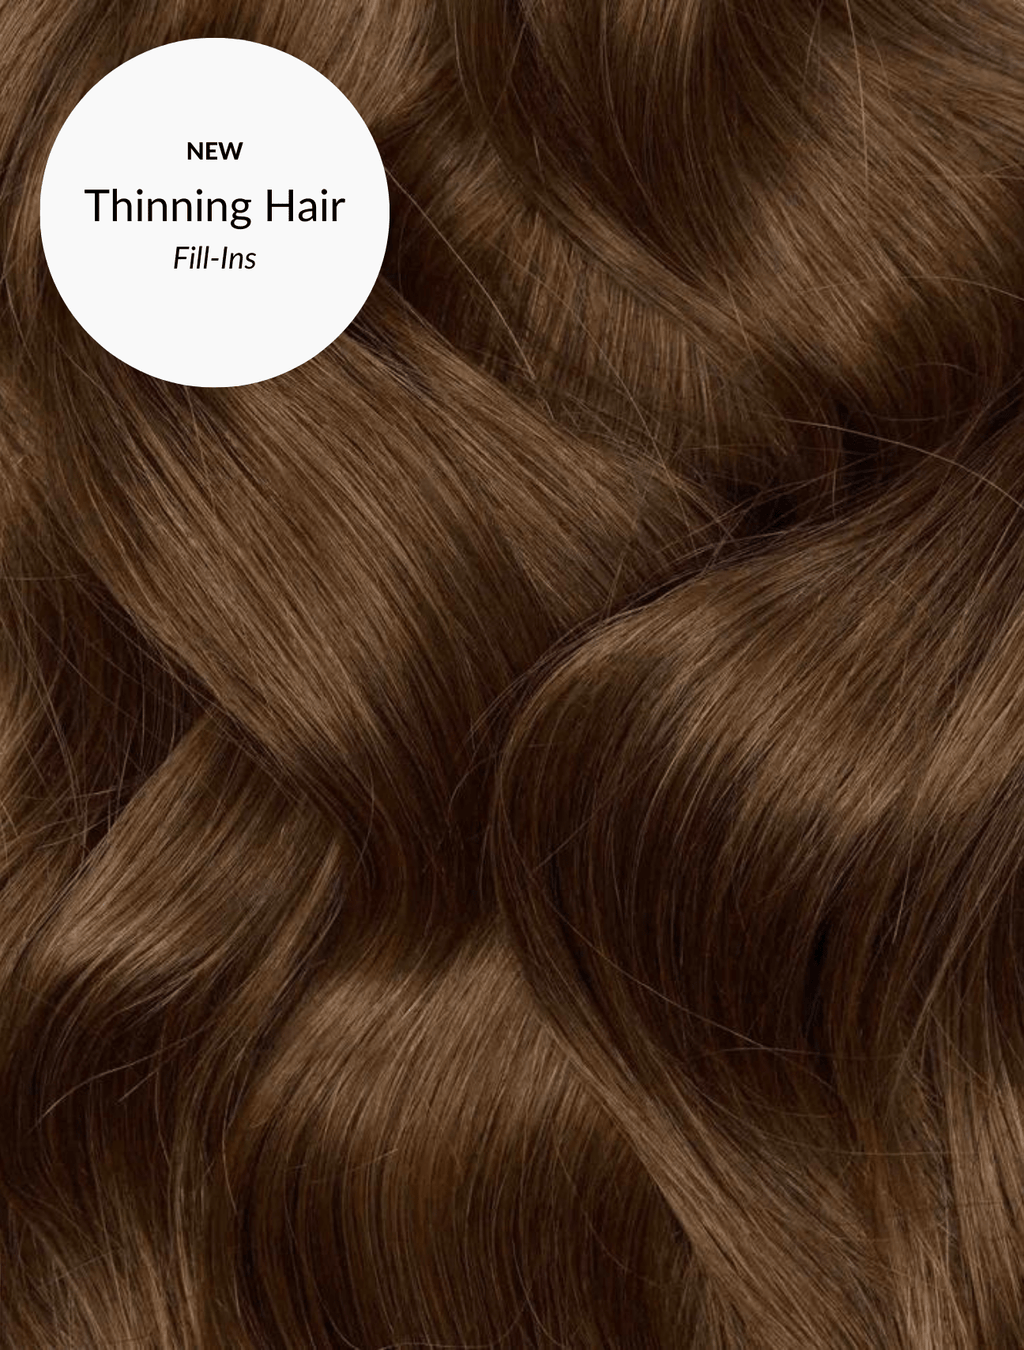 Caramel Brown (4) Thin Hair Fill-Ins